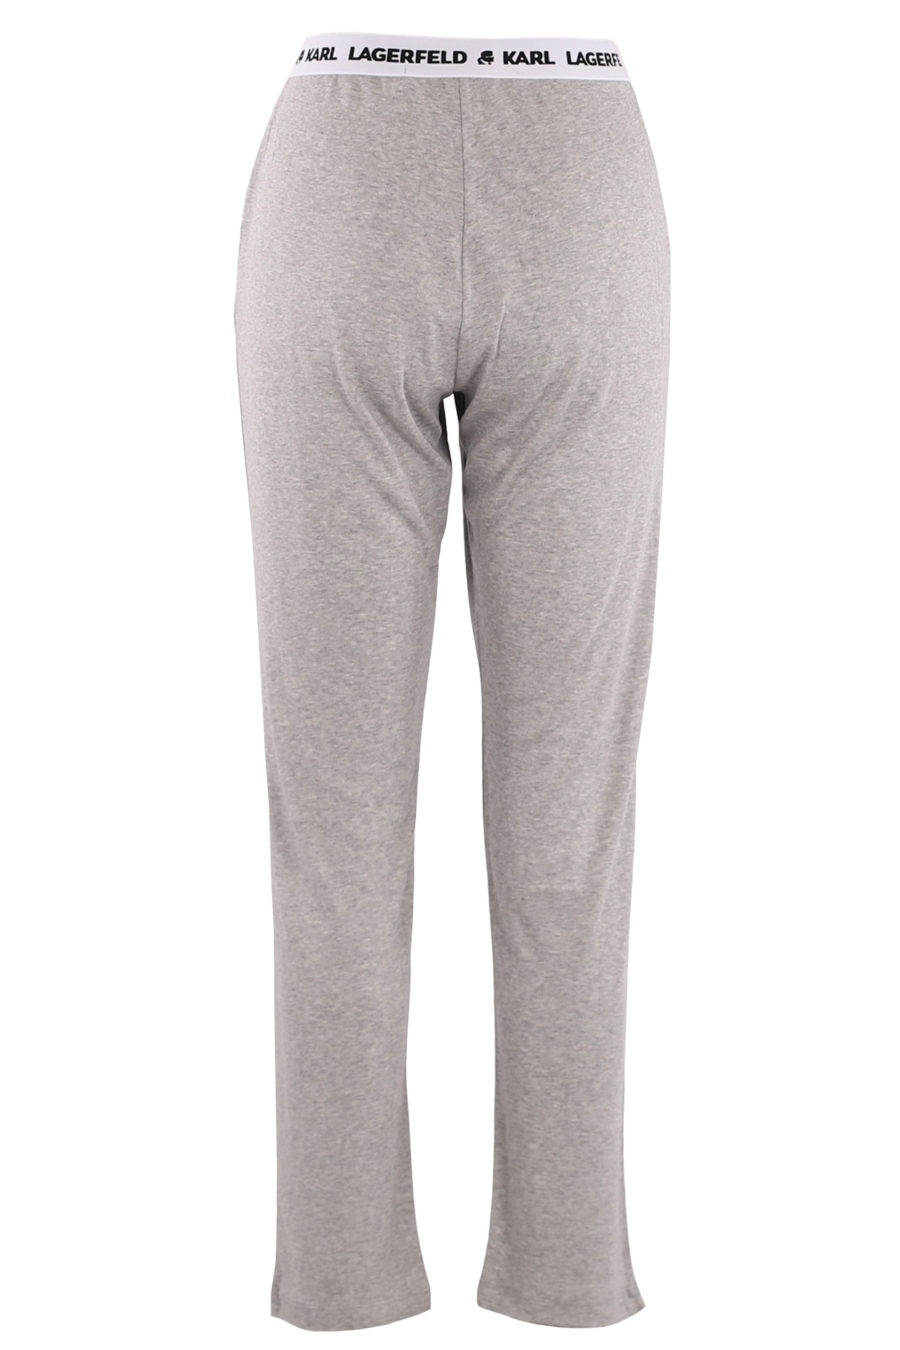 Pantalón unisex de color gris con logotipo - fe3f909997a74e1cd20c17cb718a6e92aae0ec70